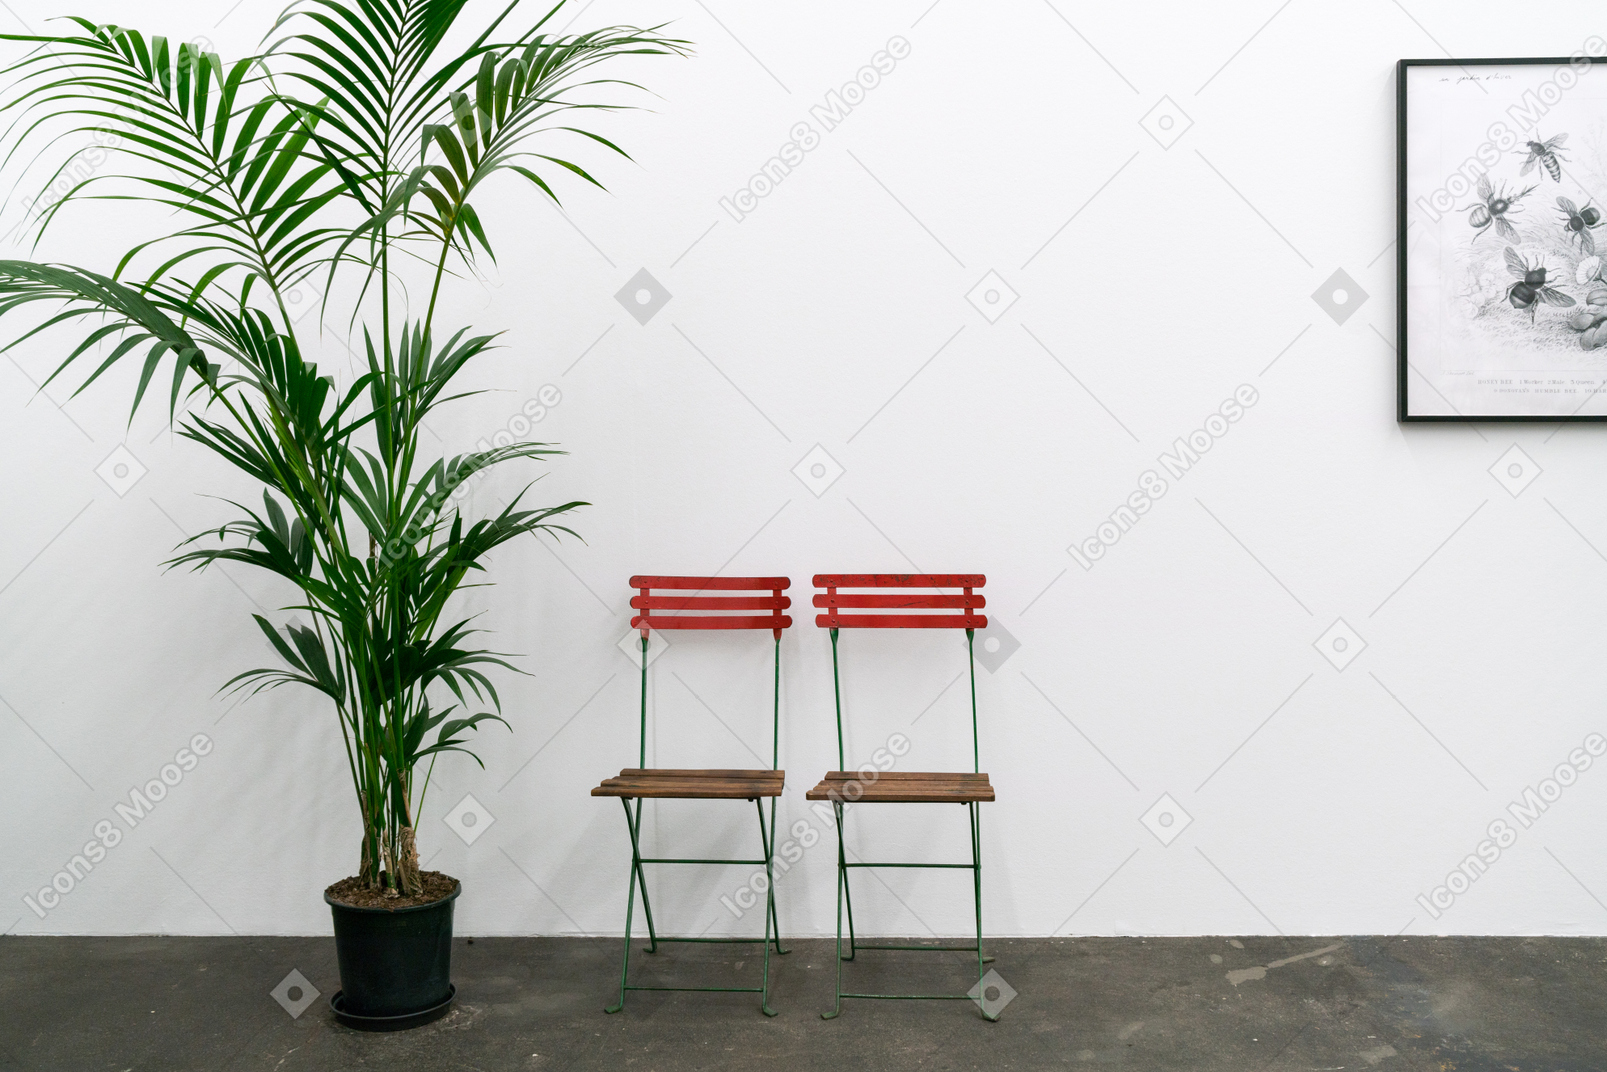 2 つの椅子、鉢植えの植物、壁の額入りの写真